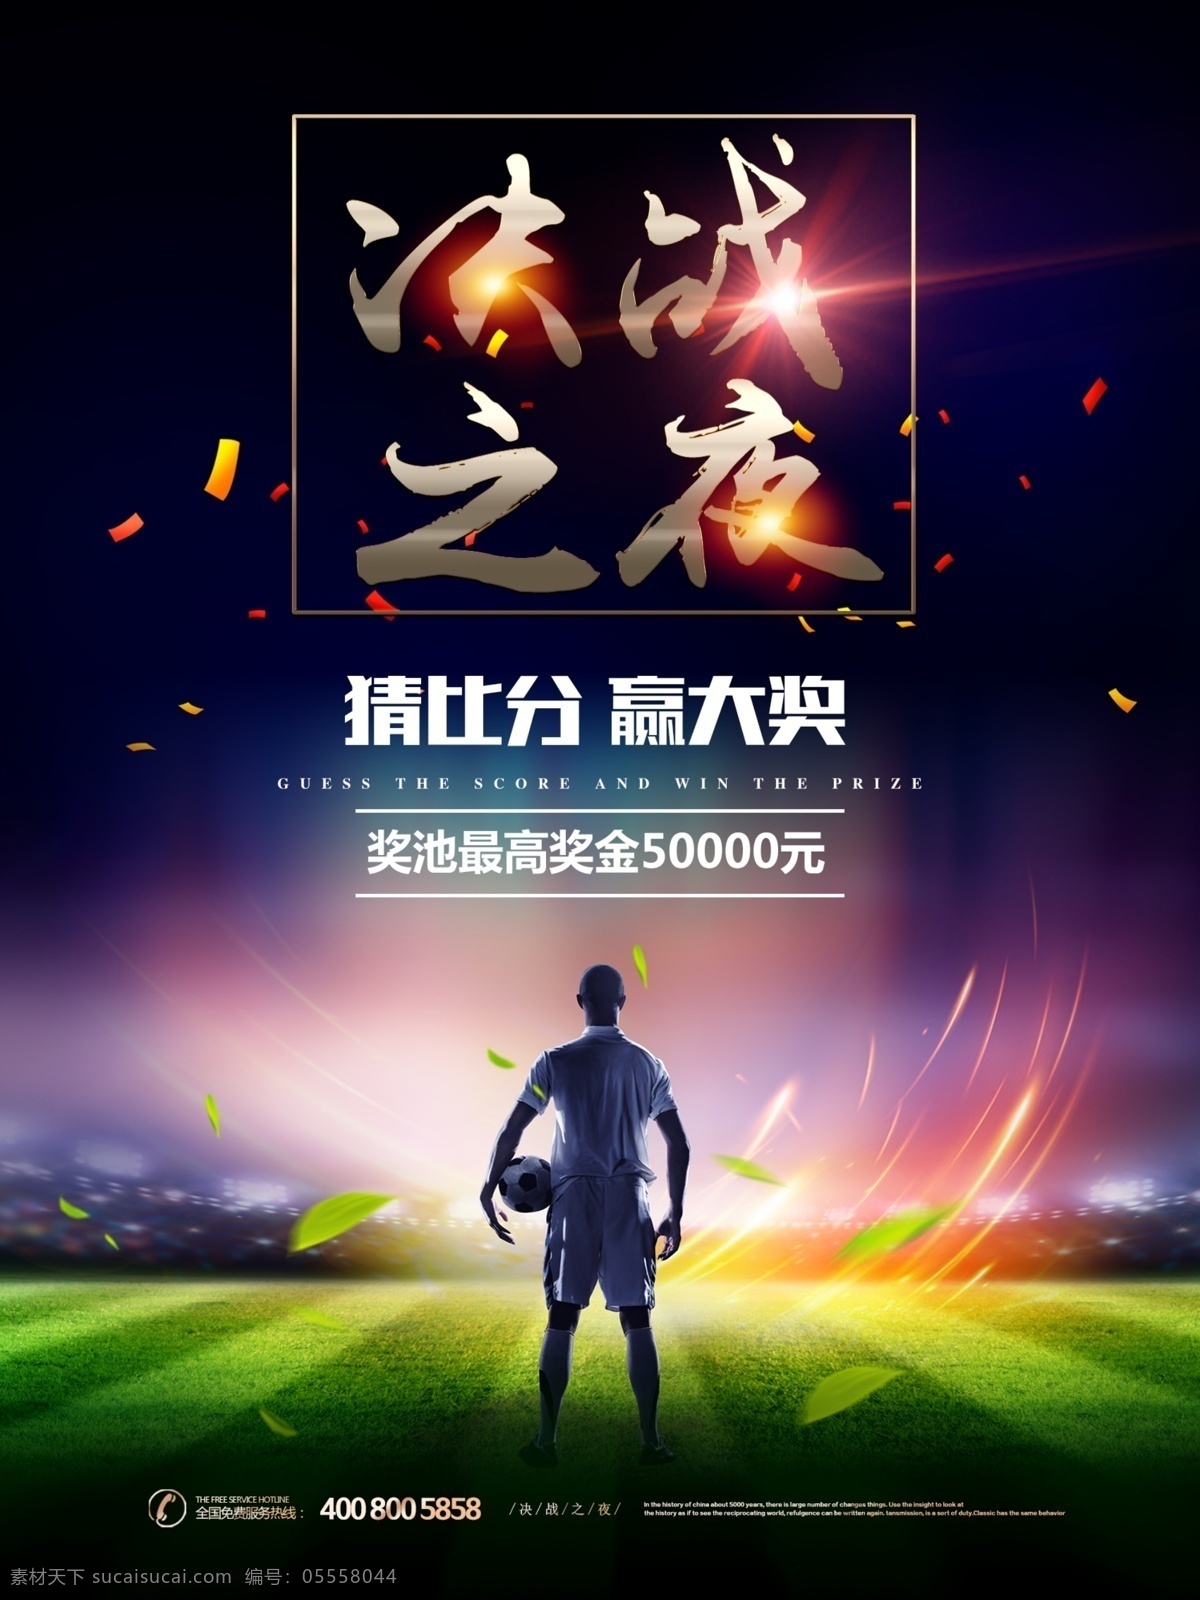 2019 亚洲杯 足球比赛 海报 亚洲杯海报 足球比赛海报 足球比赛活动 足球赛广告 亚洲杯决赛 决赛 大奖